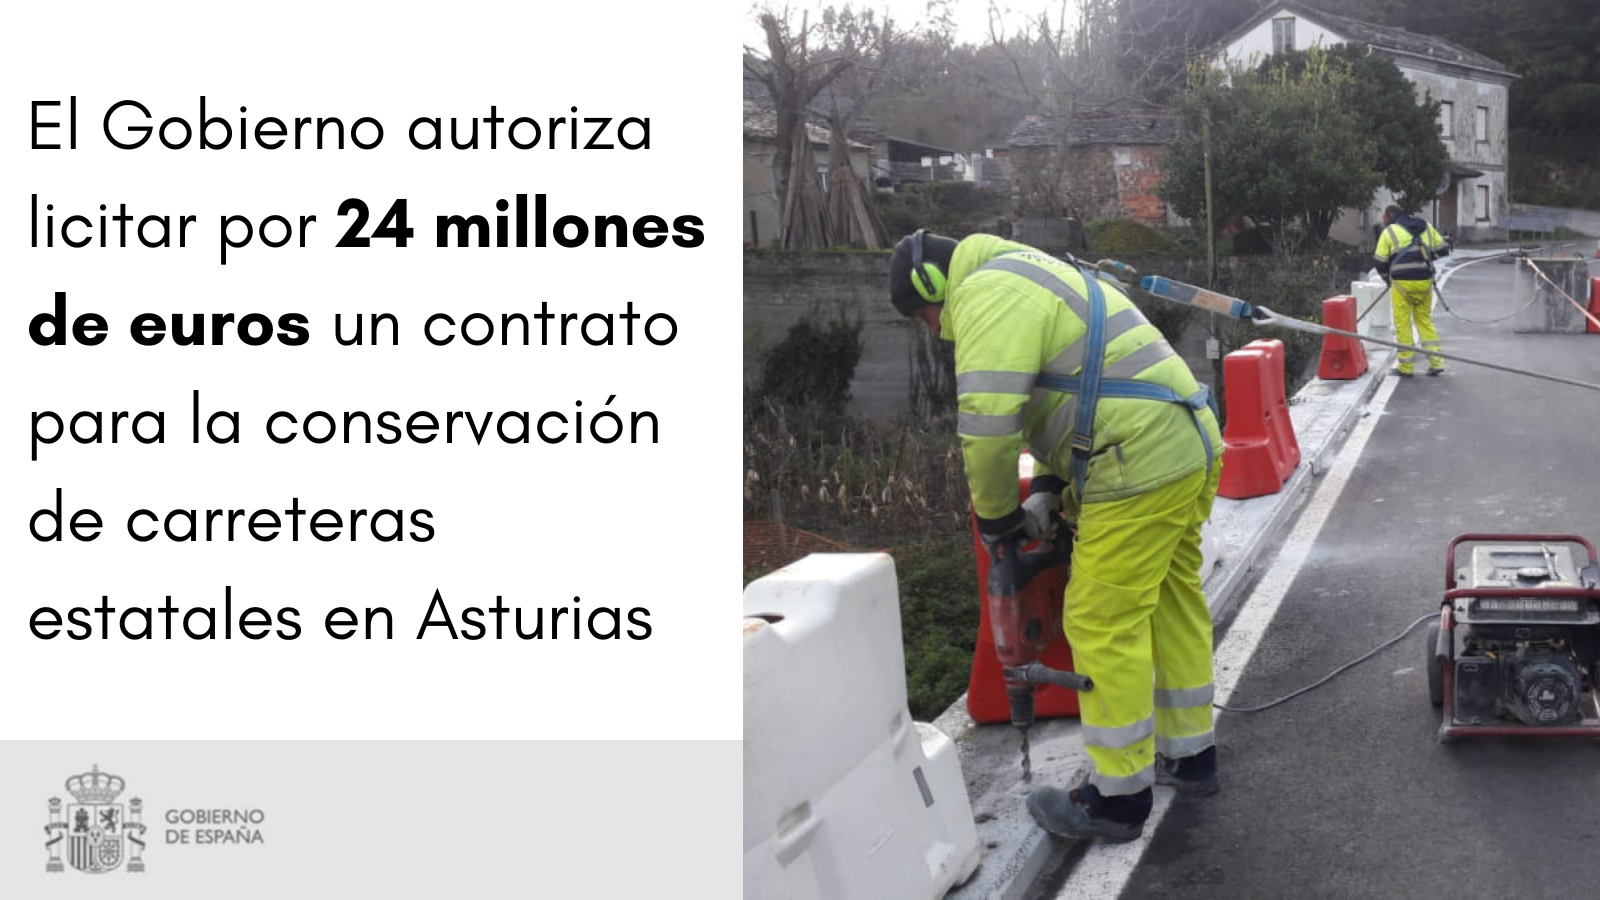 El Gobierno autoriza licitar por 24 millones de euros un contrato para la conservación de carreteras en Asturias